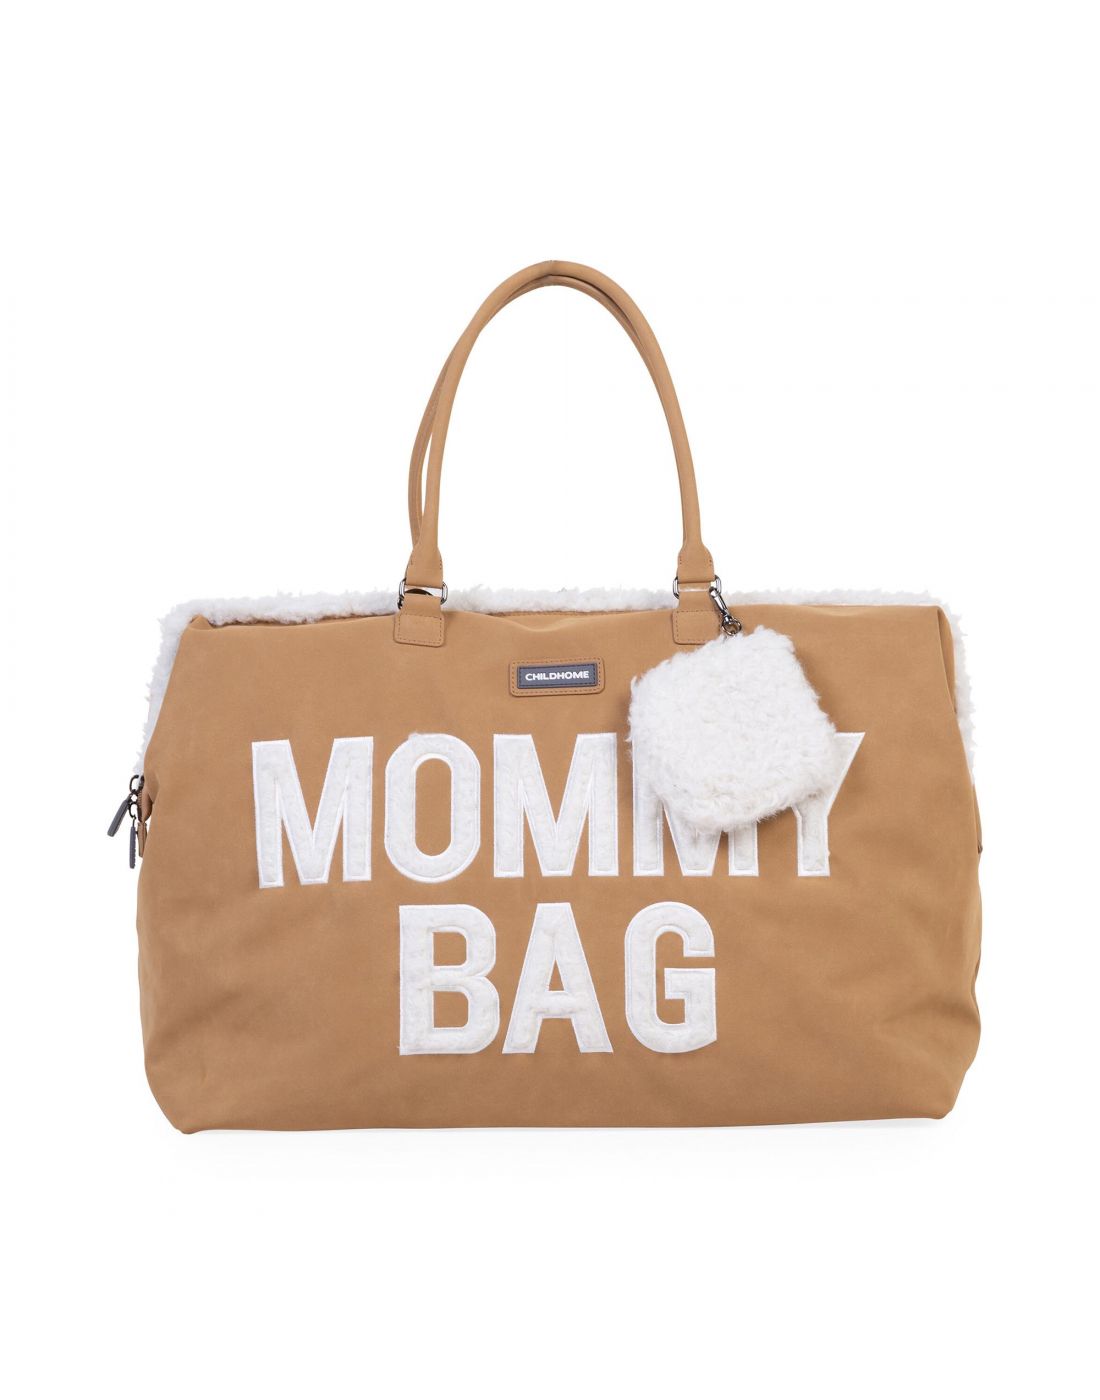 Τσάντα Αλλαγής Mommy Bag Suede Look Childhome, Childhome, BR77211 |  LapinKids.com | LAPIN KIDS